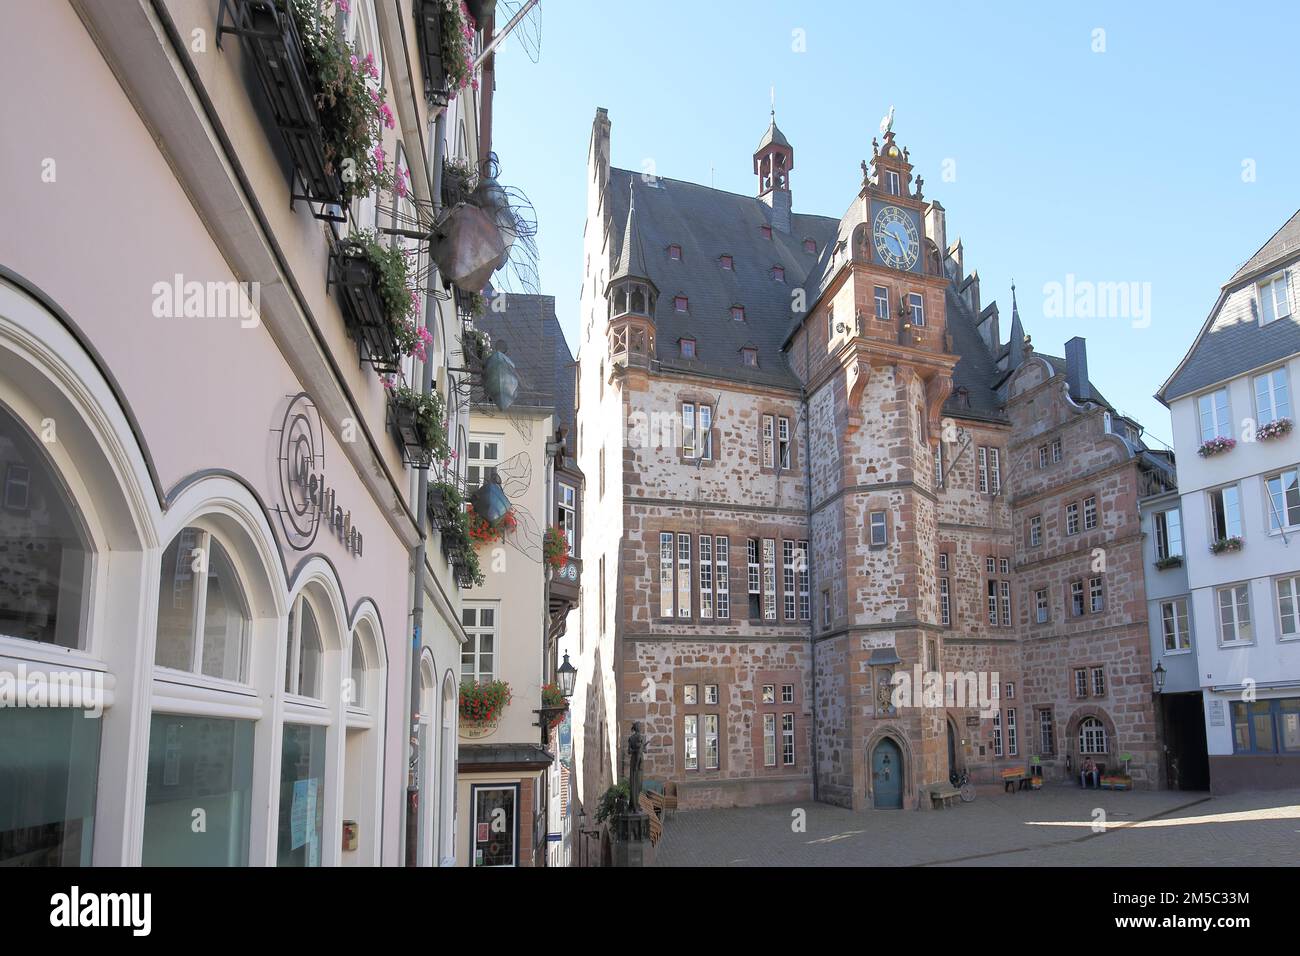 Rathaus auf dem Marktplatz, Marburg, Hessen, Deutschland Stockfoto